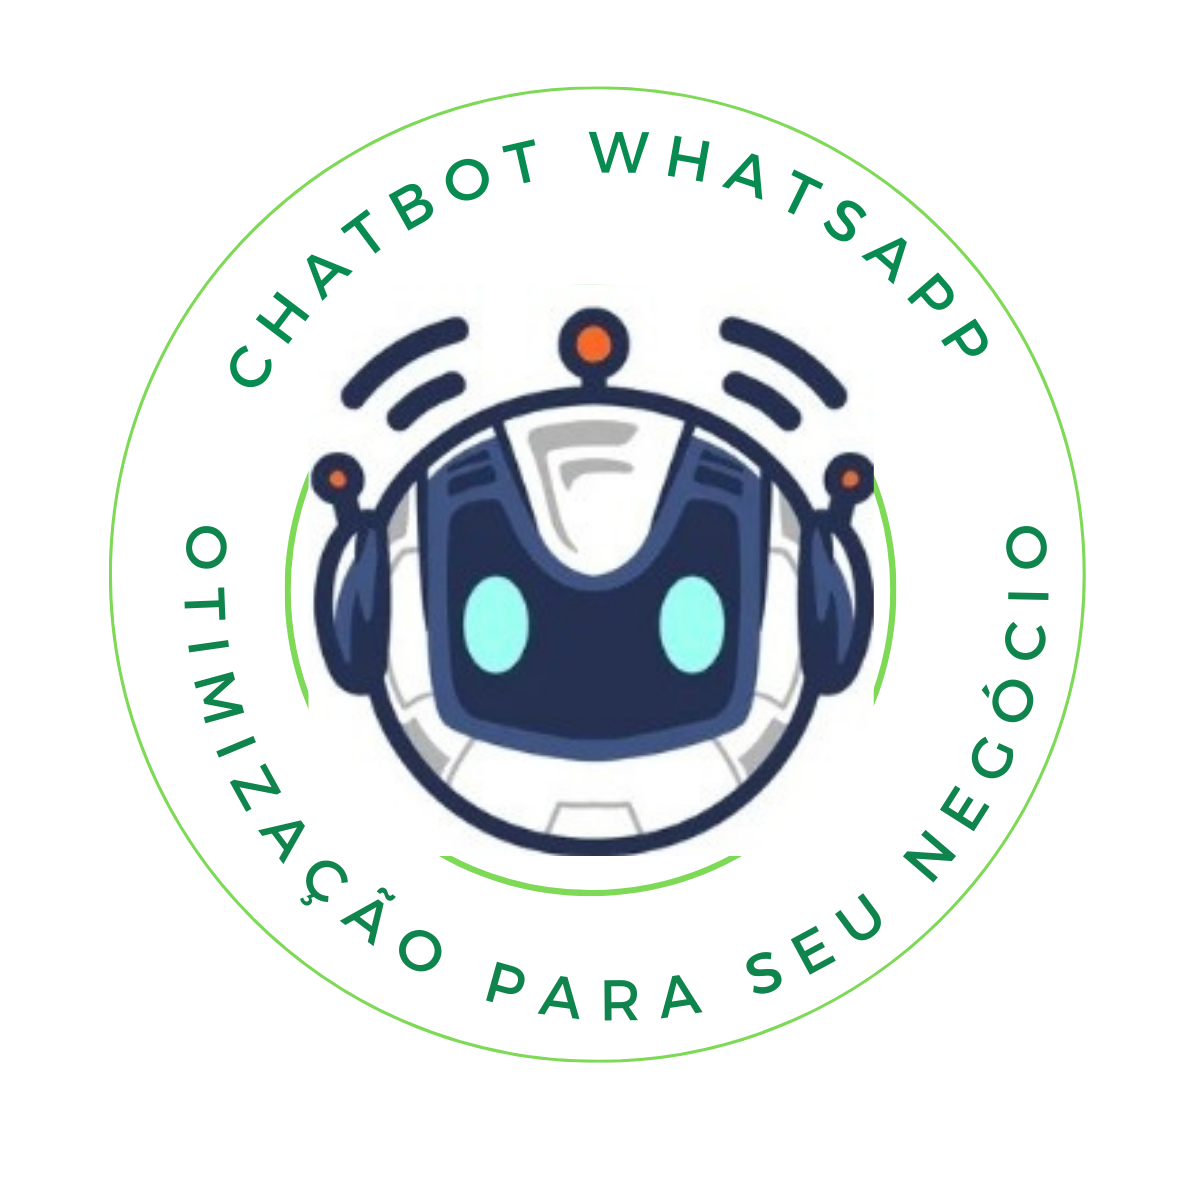 Chatbot financeiro